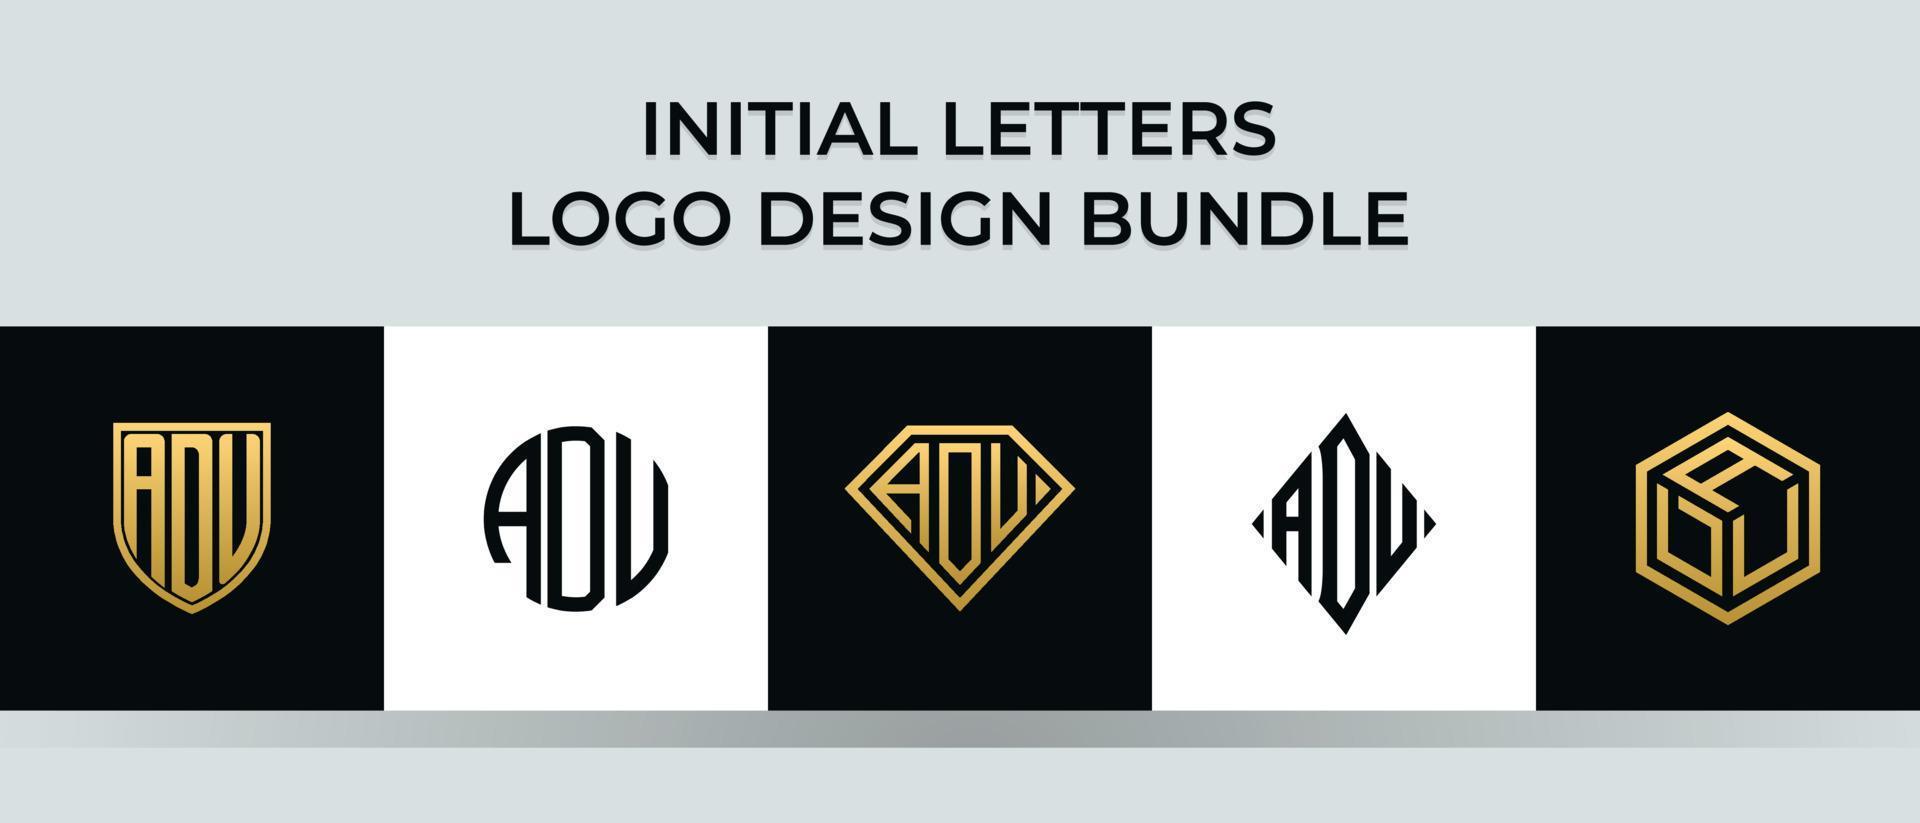 Initial letters ADU logo designs Bundle vector